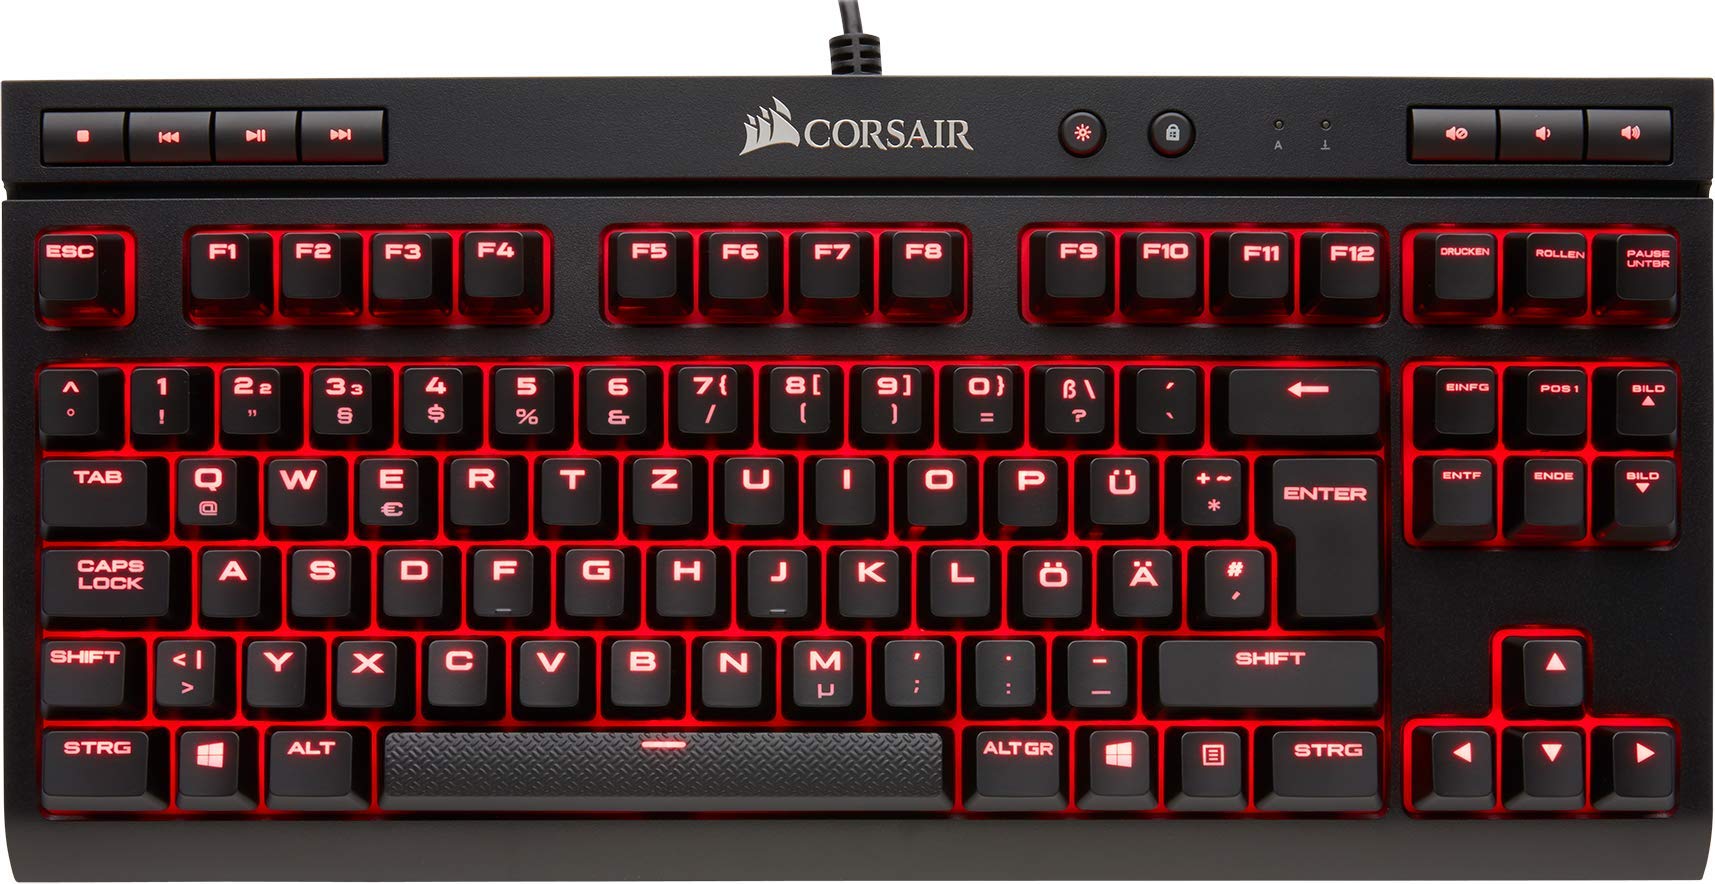 Corsair K63 Mechanische Gaming Tastatur (Cherry MX red: Leichtgängig und Schnell, Rot LED Beleuchtung, Kompakt, Qwertz) schwarz